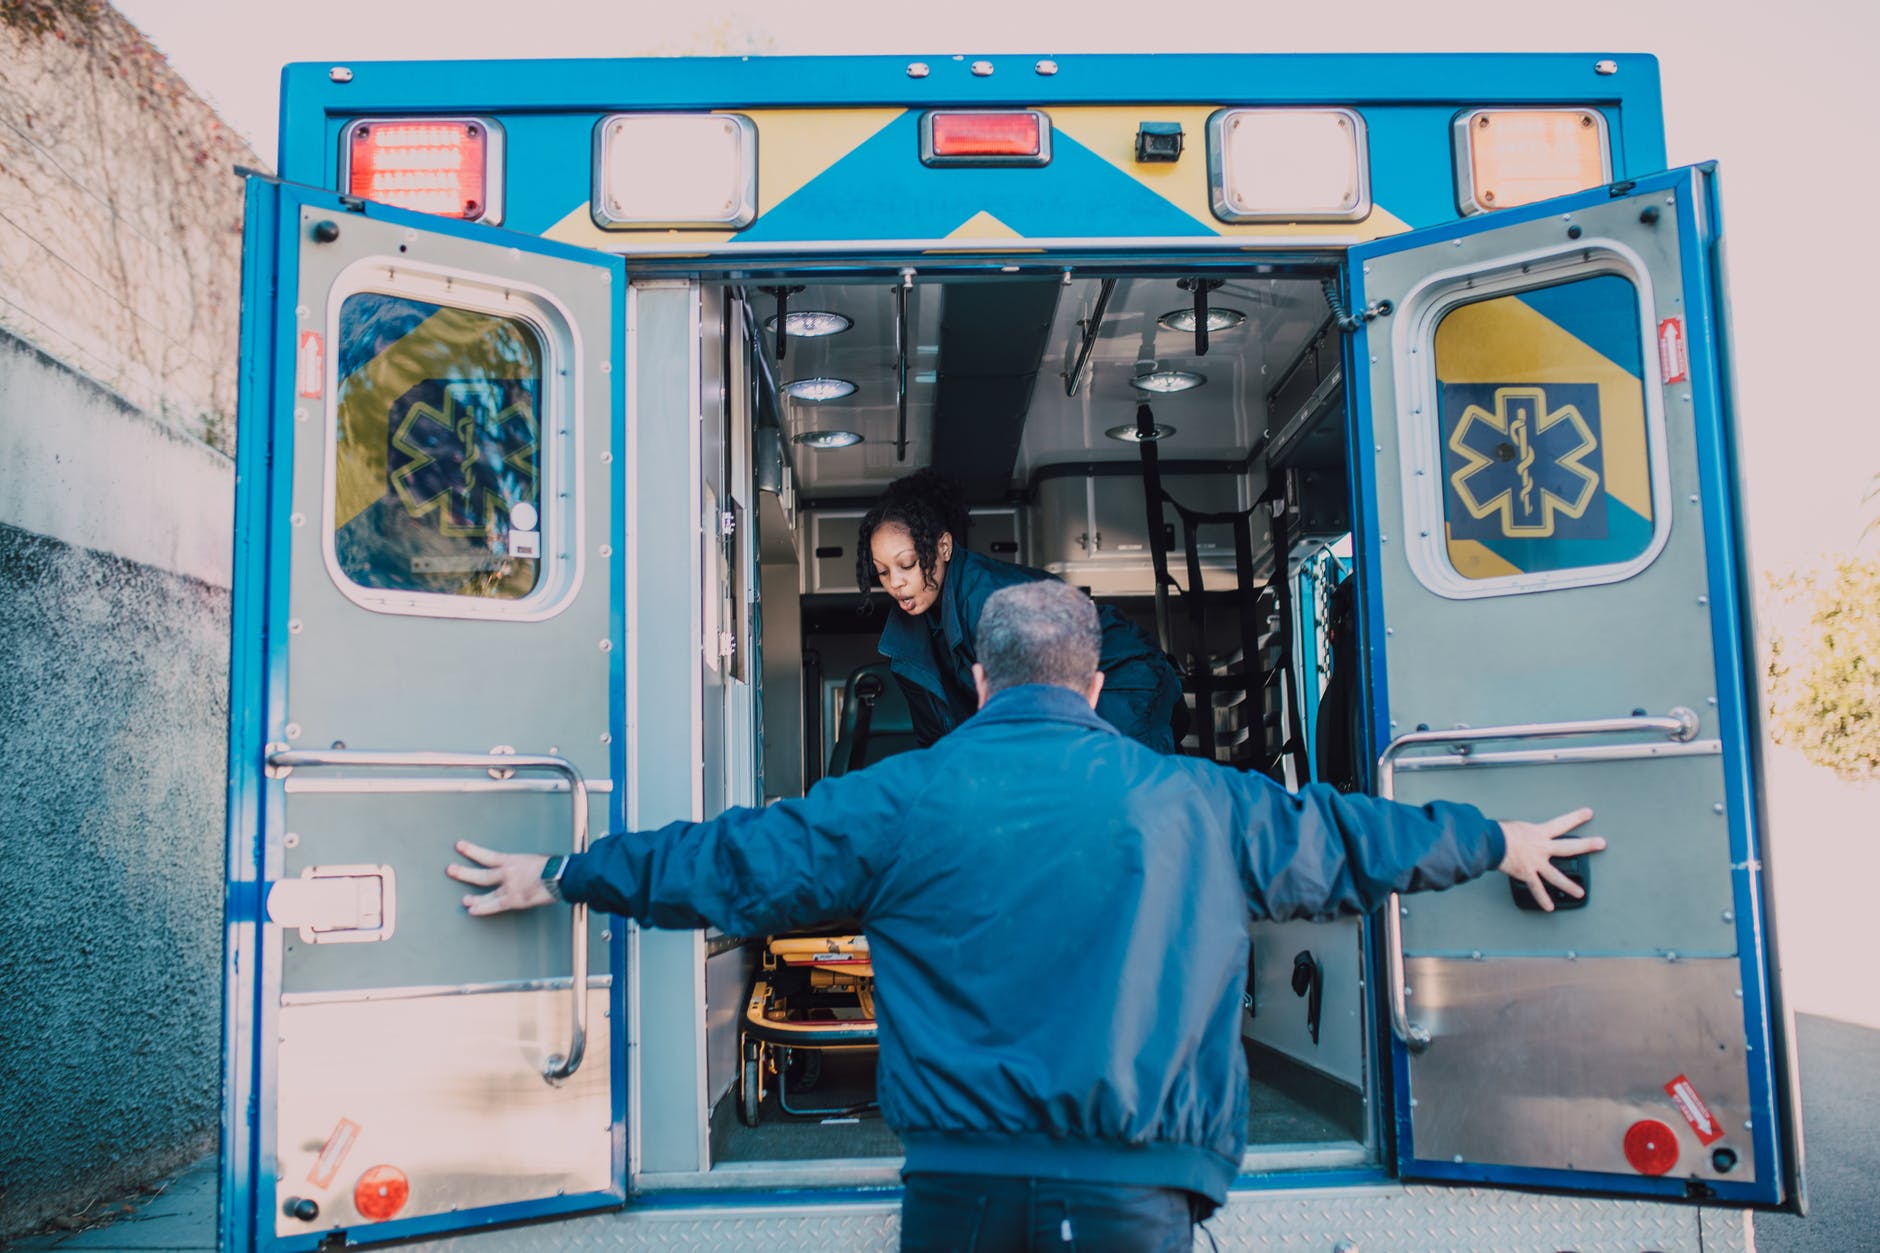 Lorsque Carla a été transférée dans l'ambulance, elle a remercié Ethan de lui avoir sauvé la vie | Source : Pexels